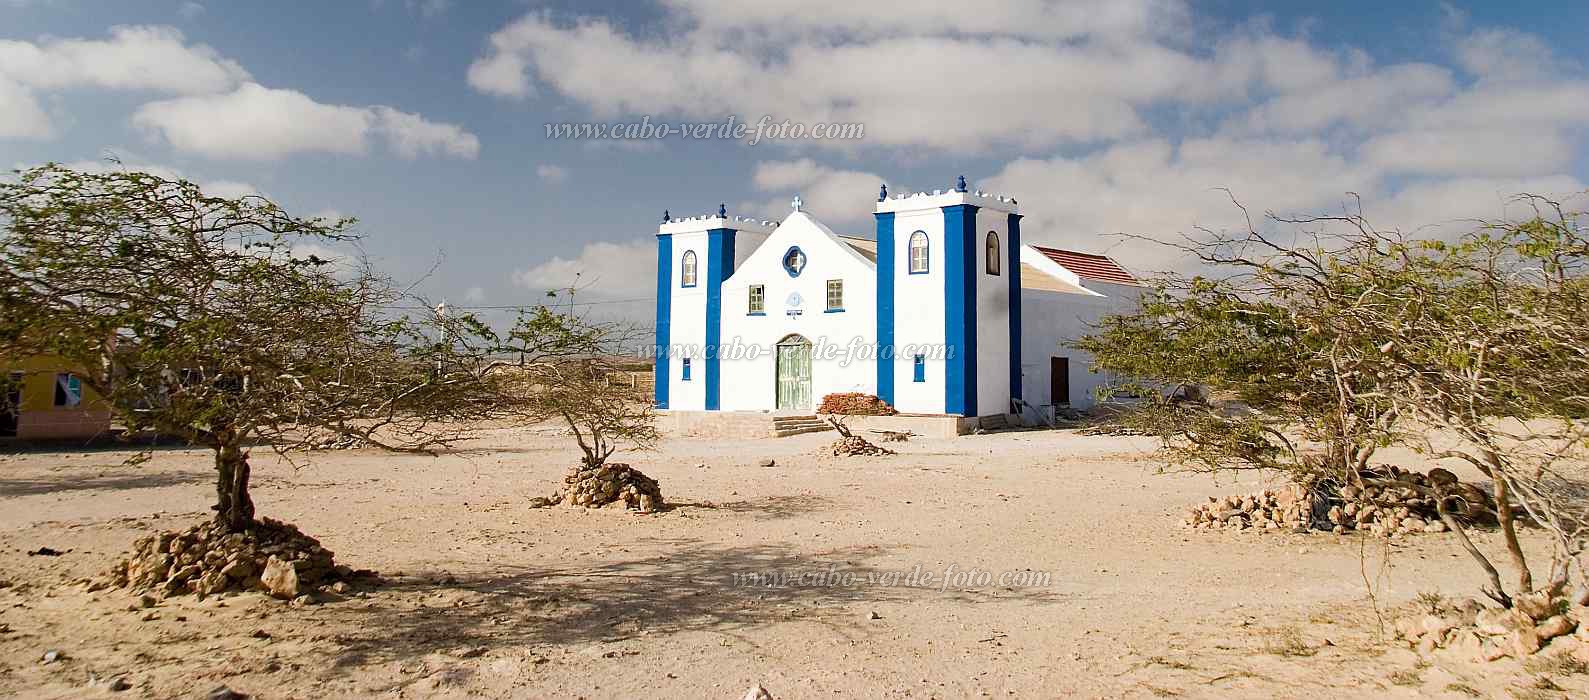 Boa Vista : Rabil : igreja : Landscape TownCabo Verde Foto Gallery